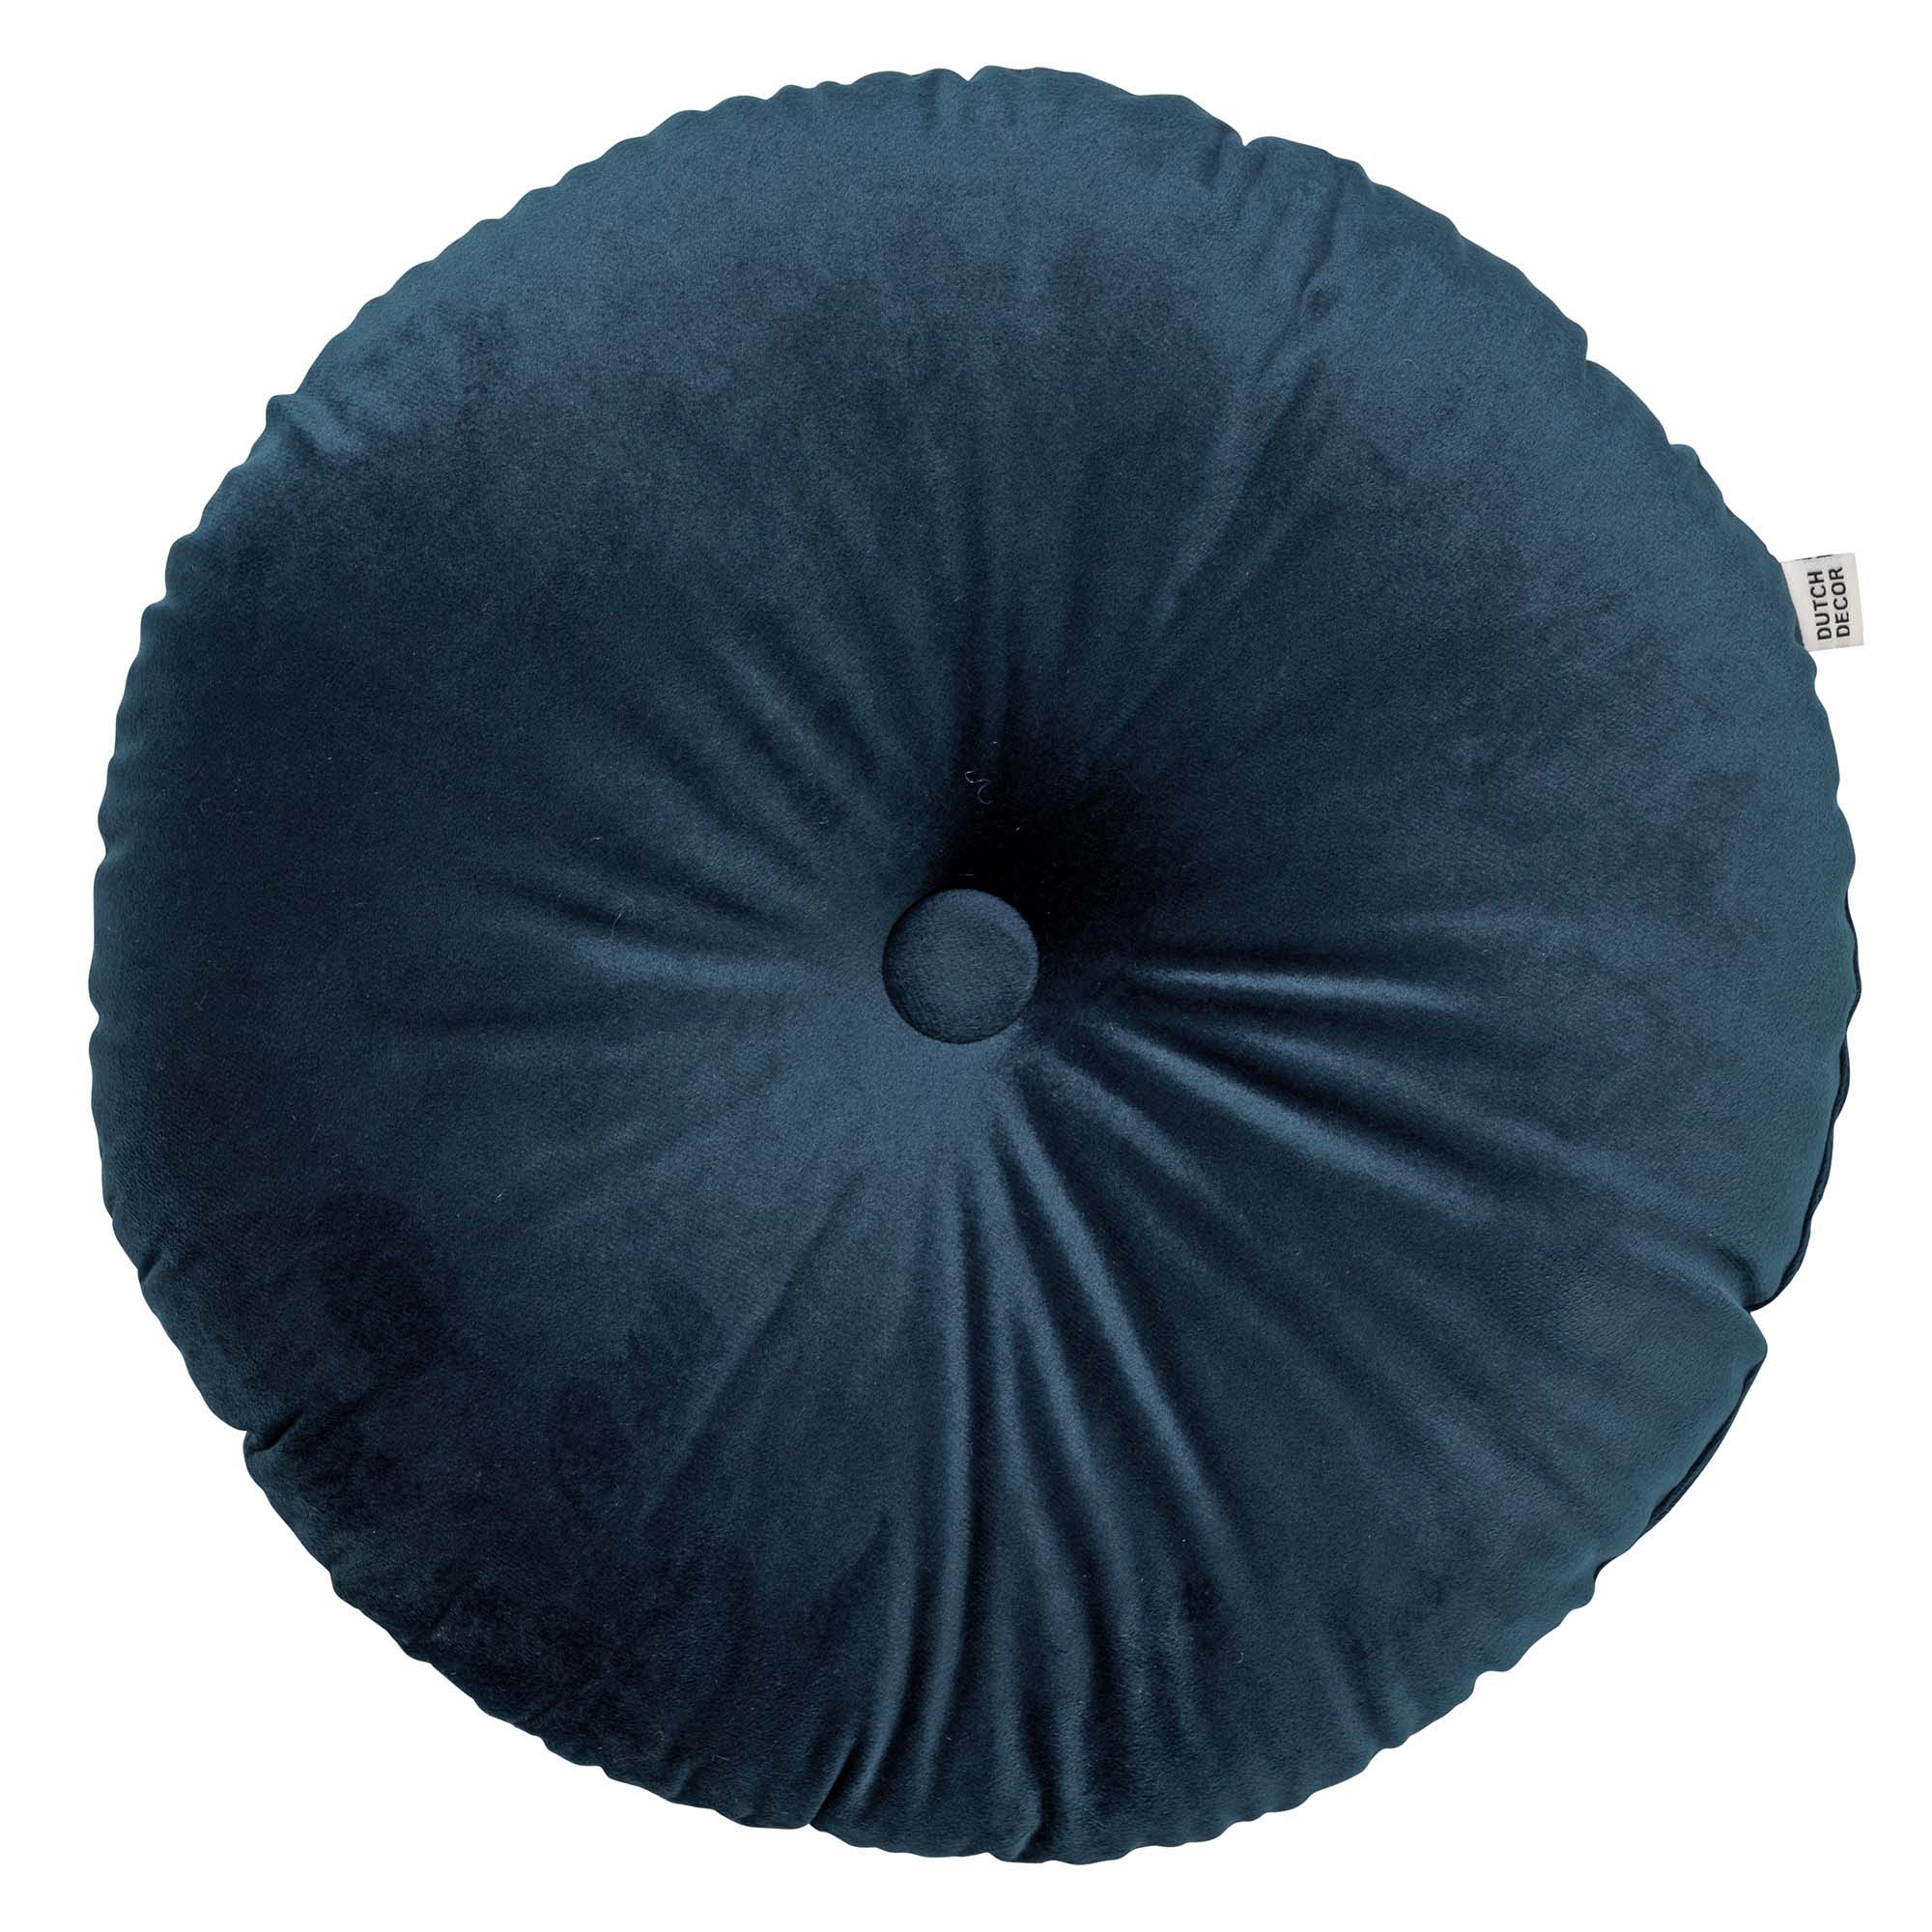 OLLY - Sierkussen rond velvet 40 cm - Insignia Blue - donkerblauw